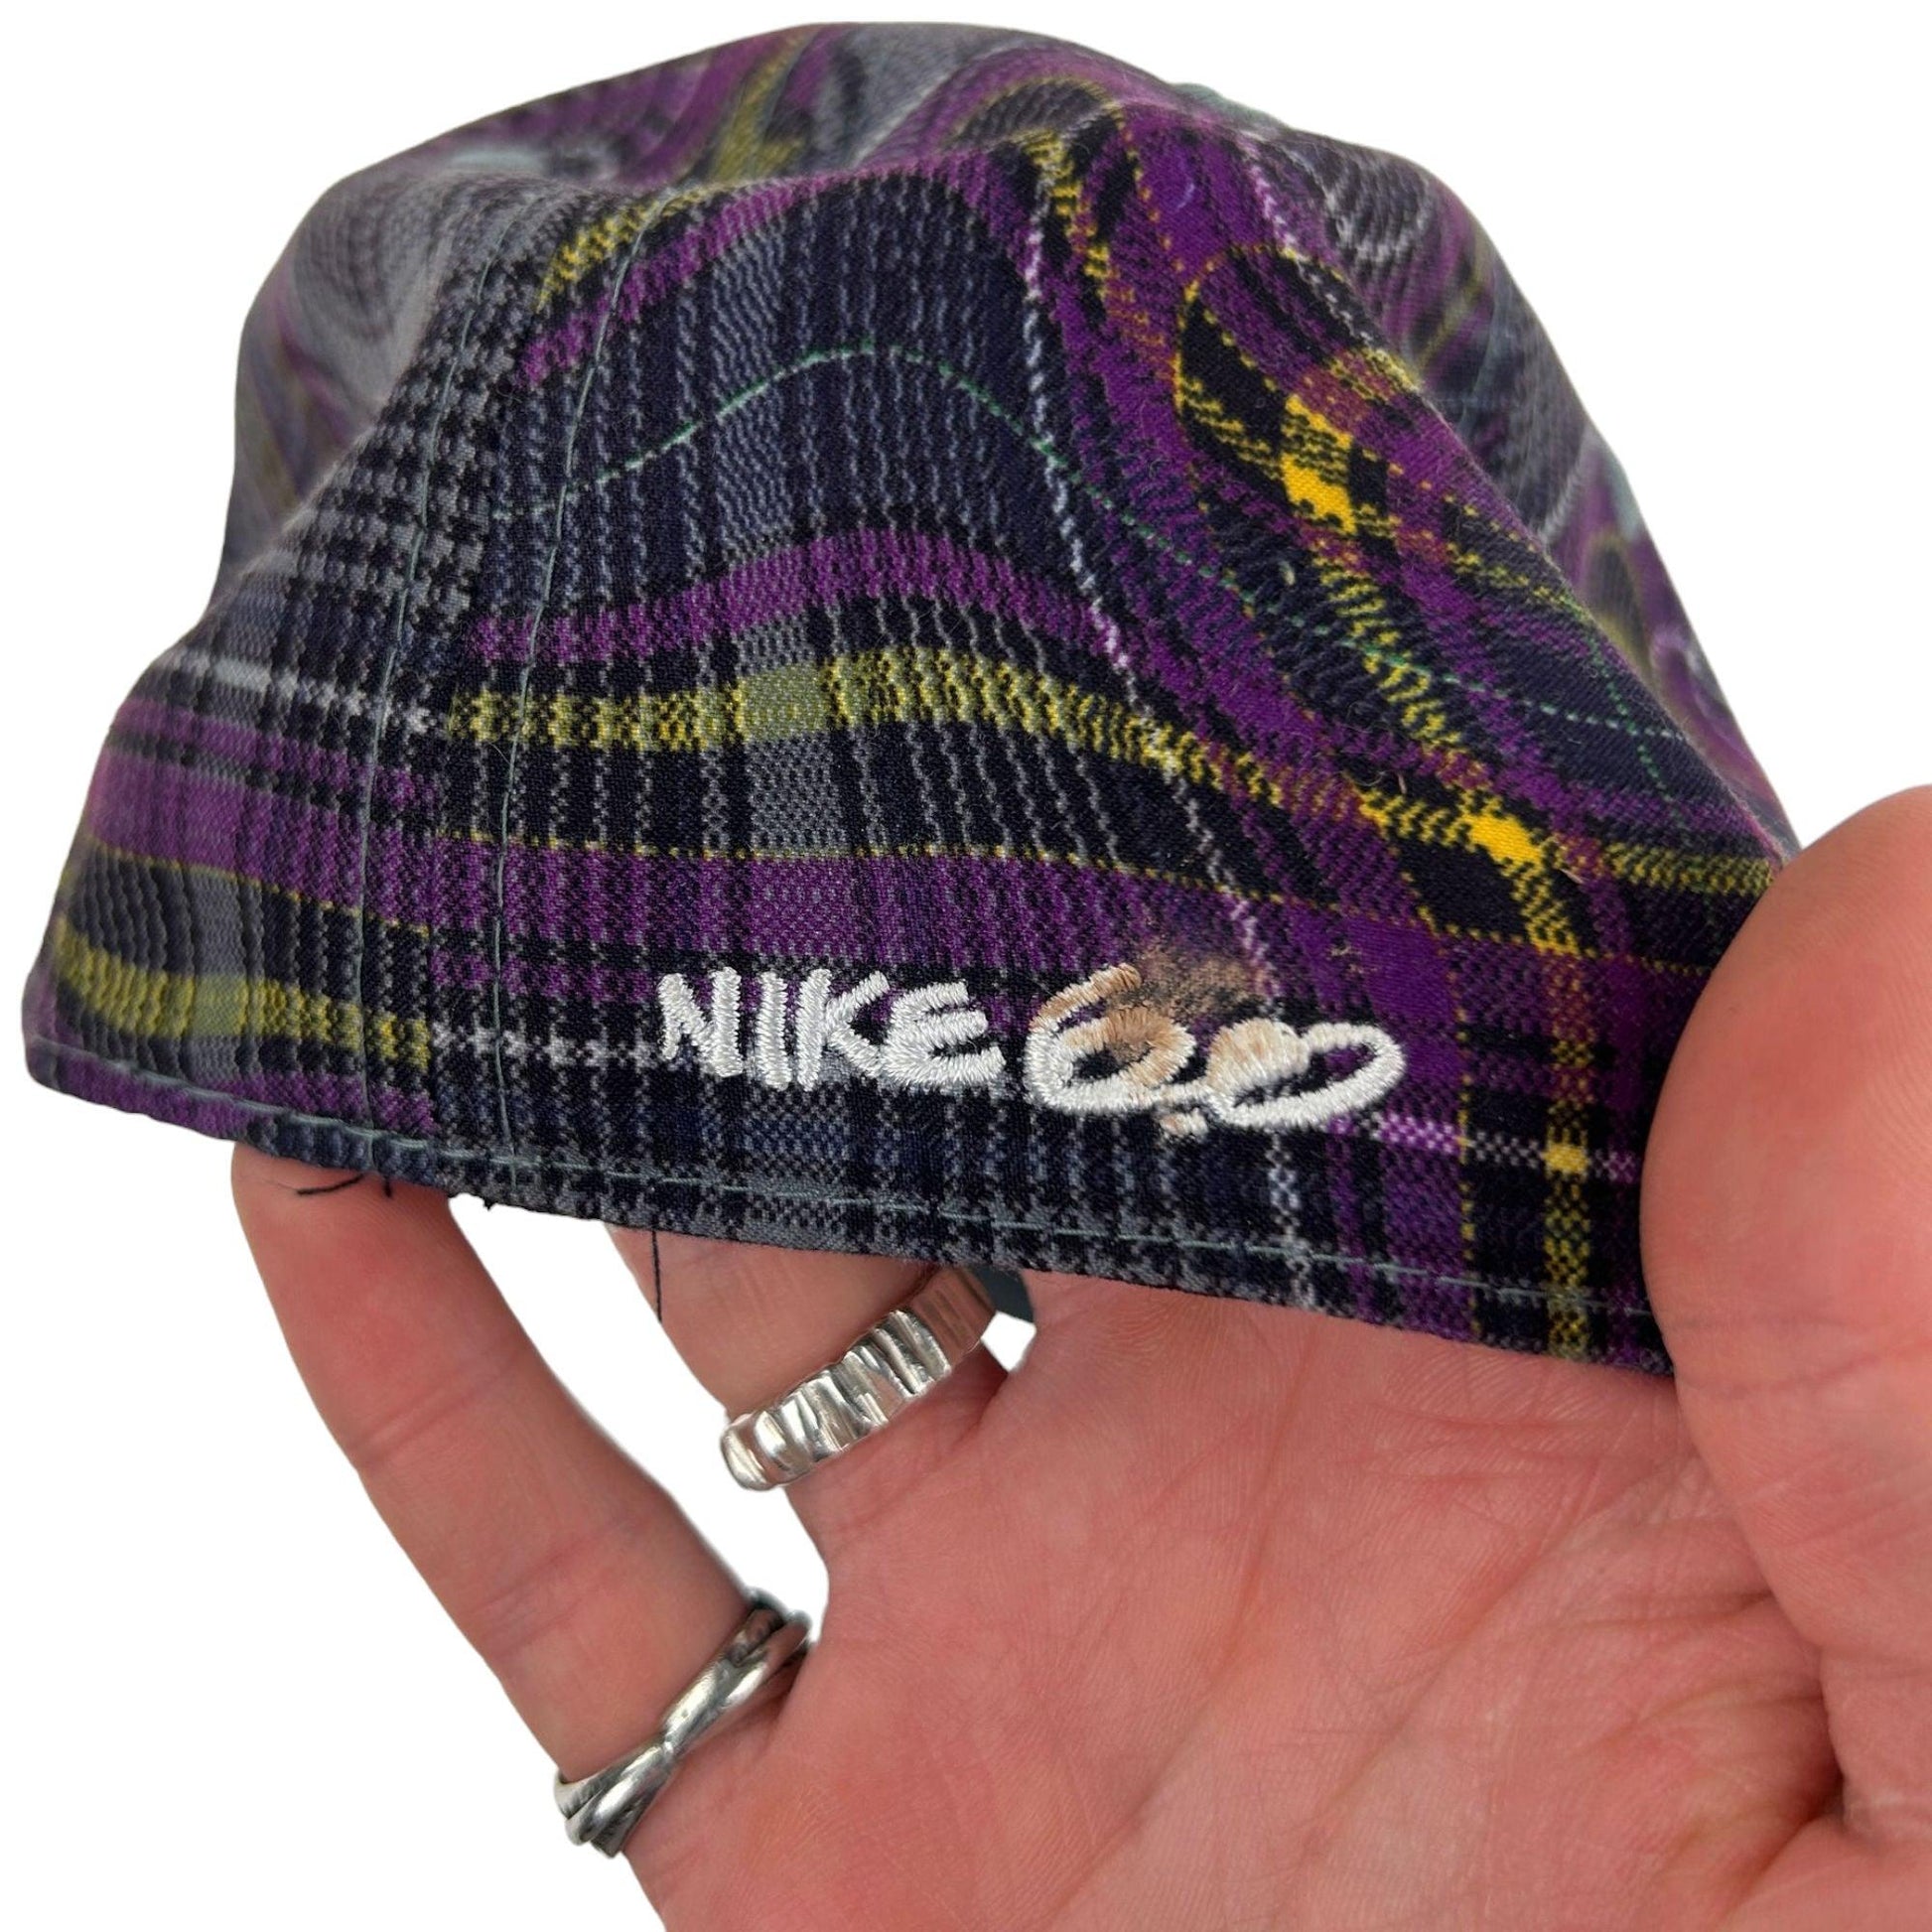 Vintage Nike 6.0 Hat - Known Source